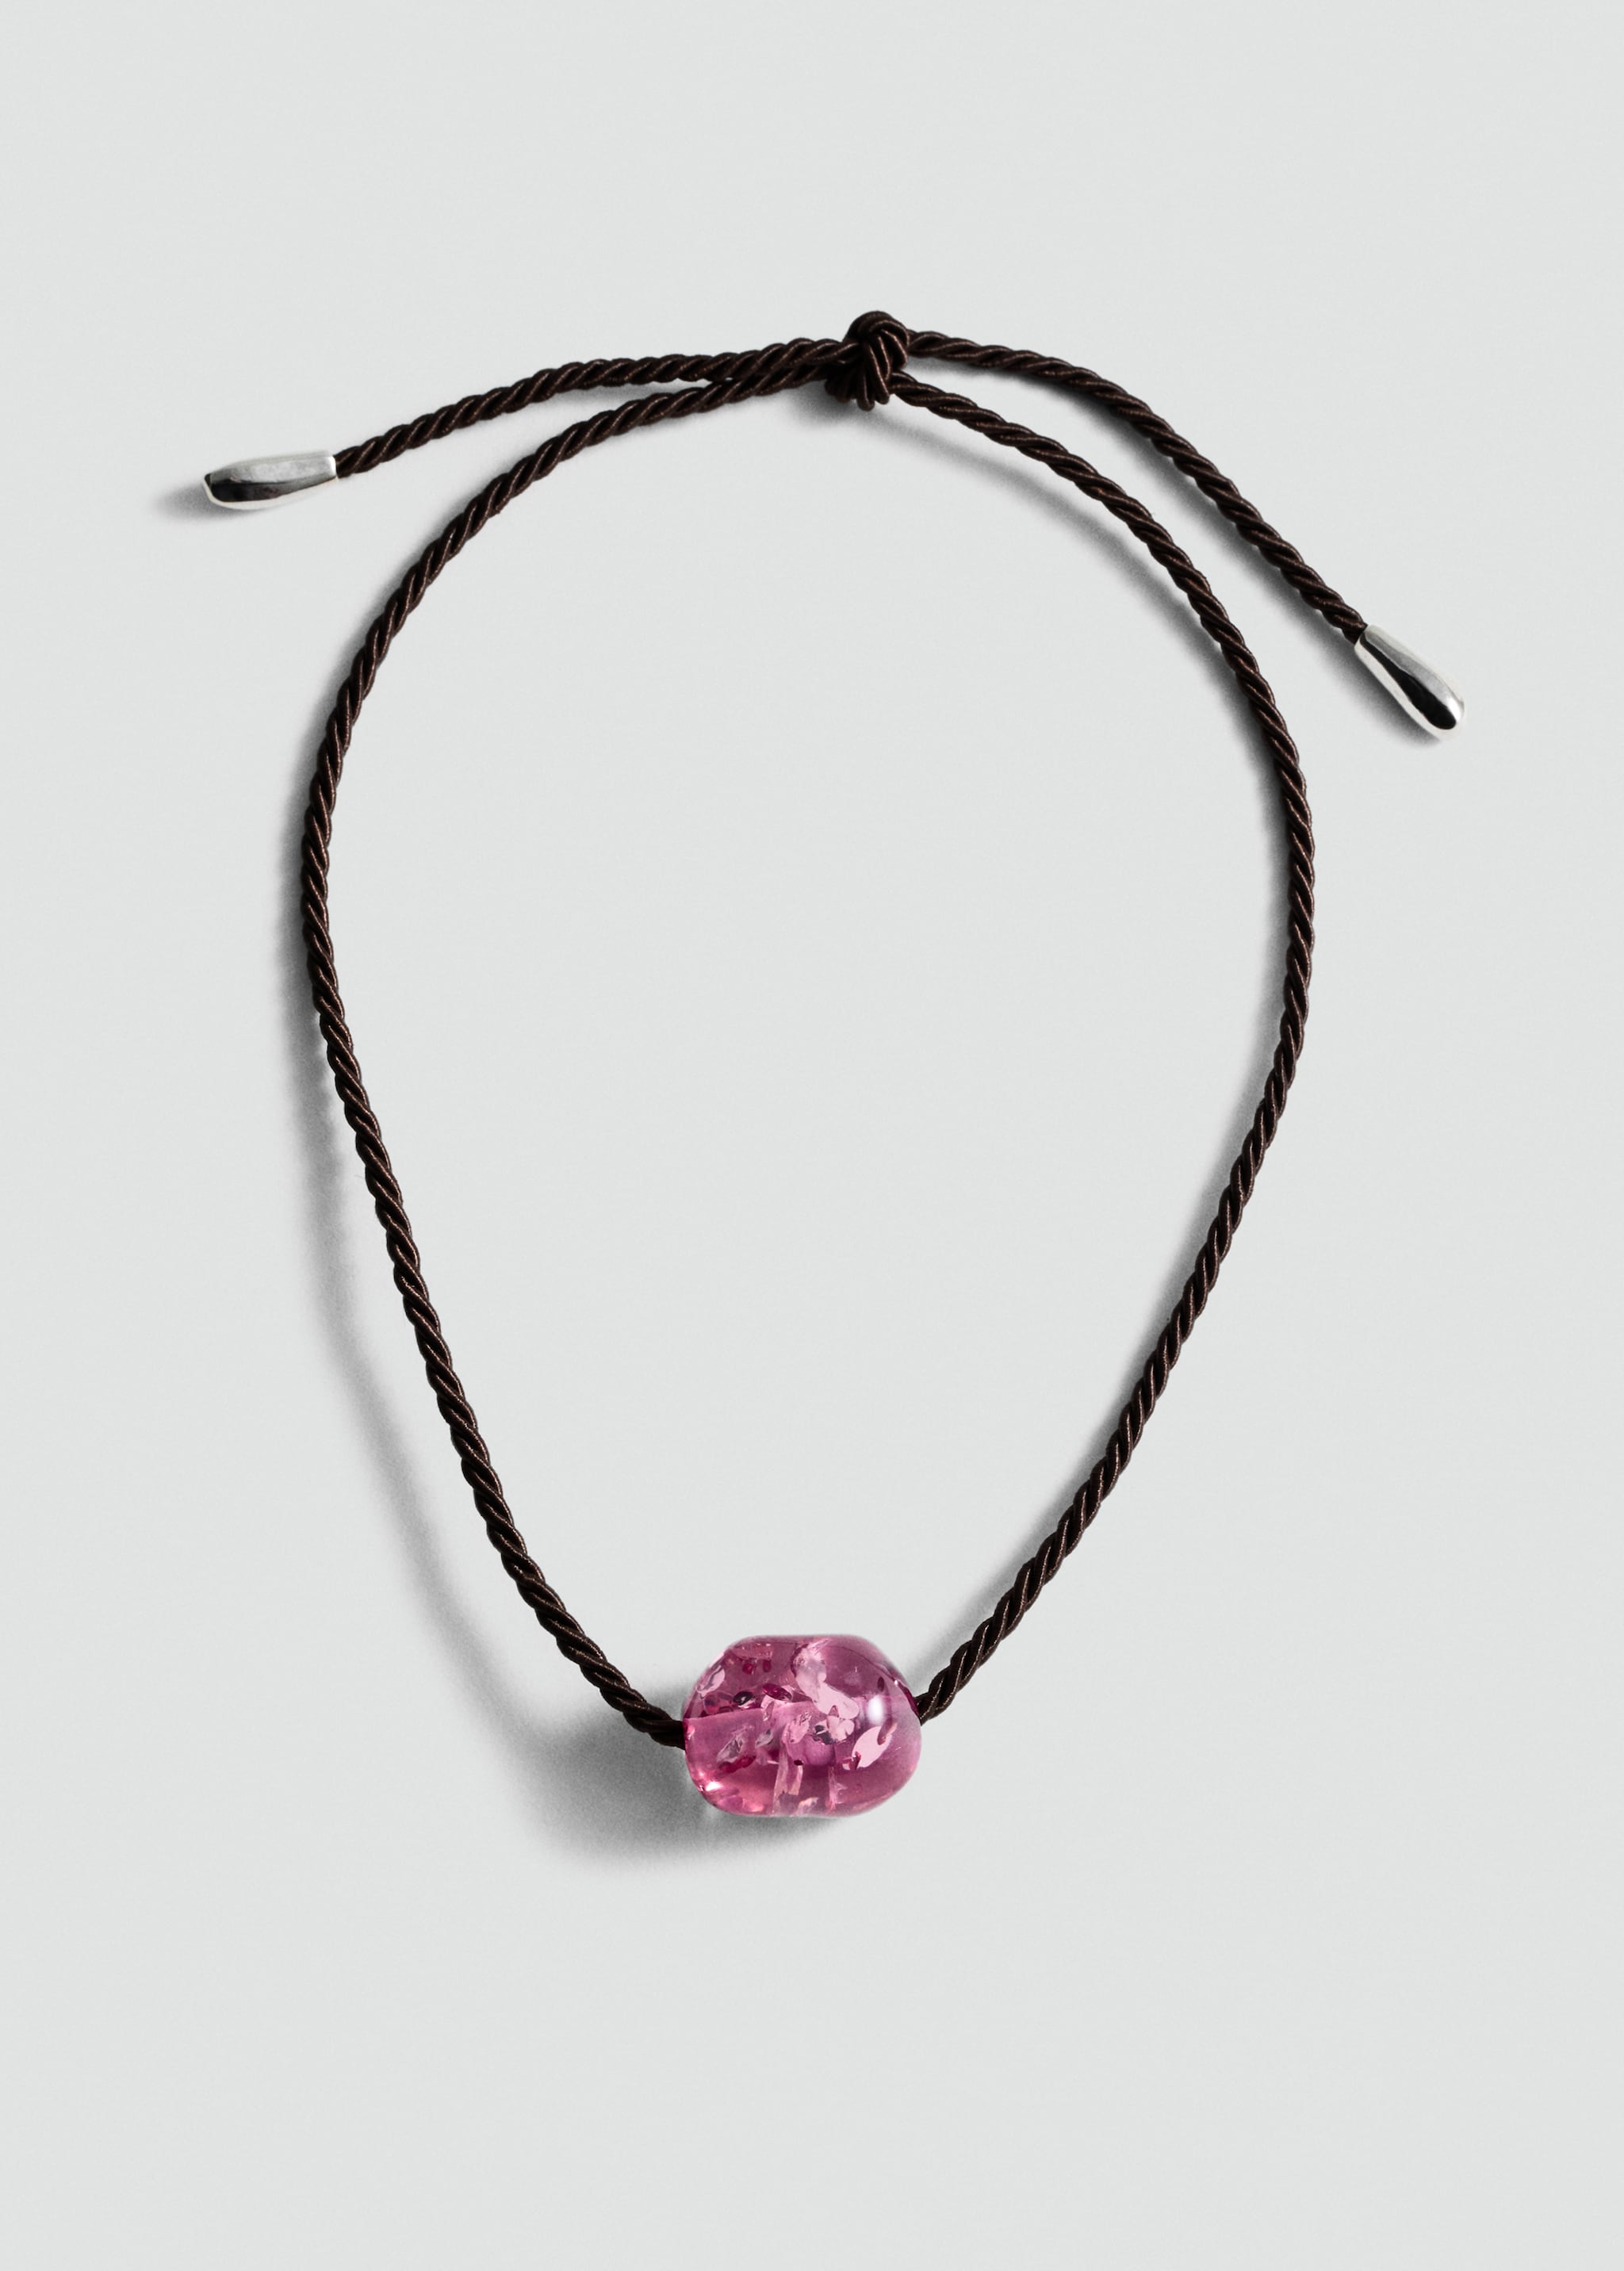 Ожерелье из шнурка с бусиной - Изделие без модели